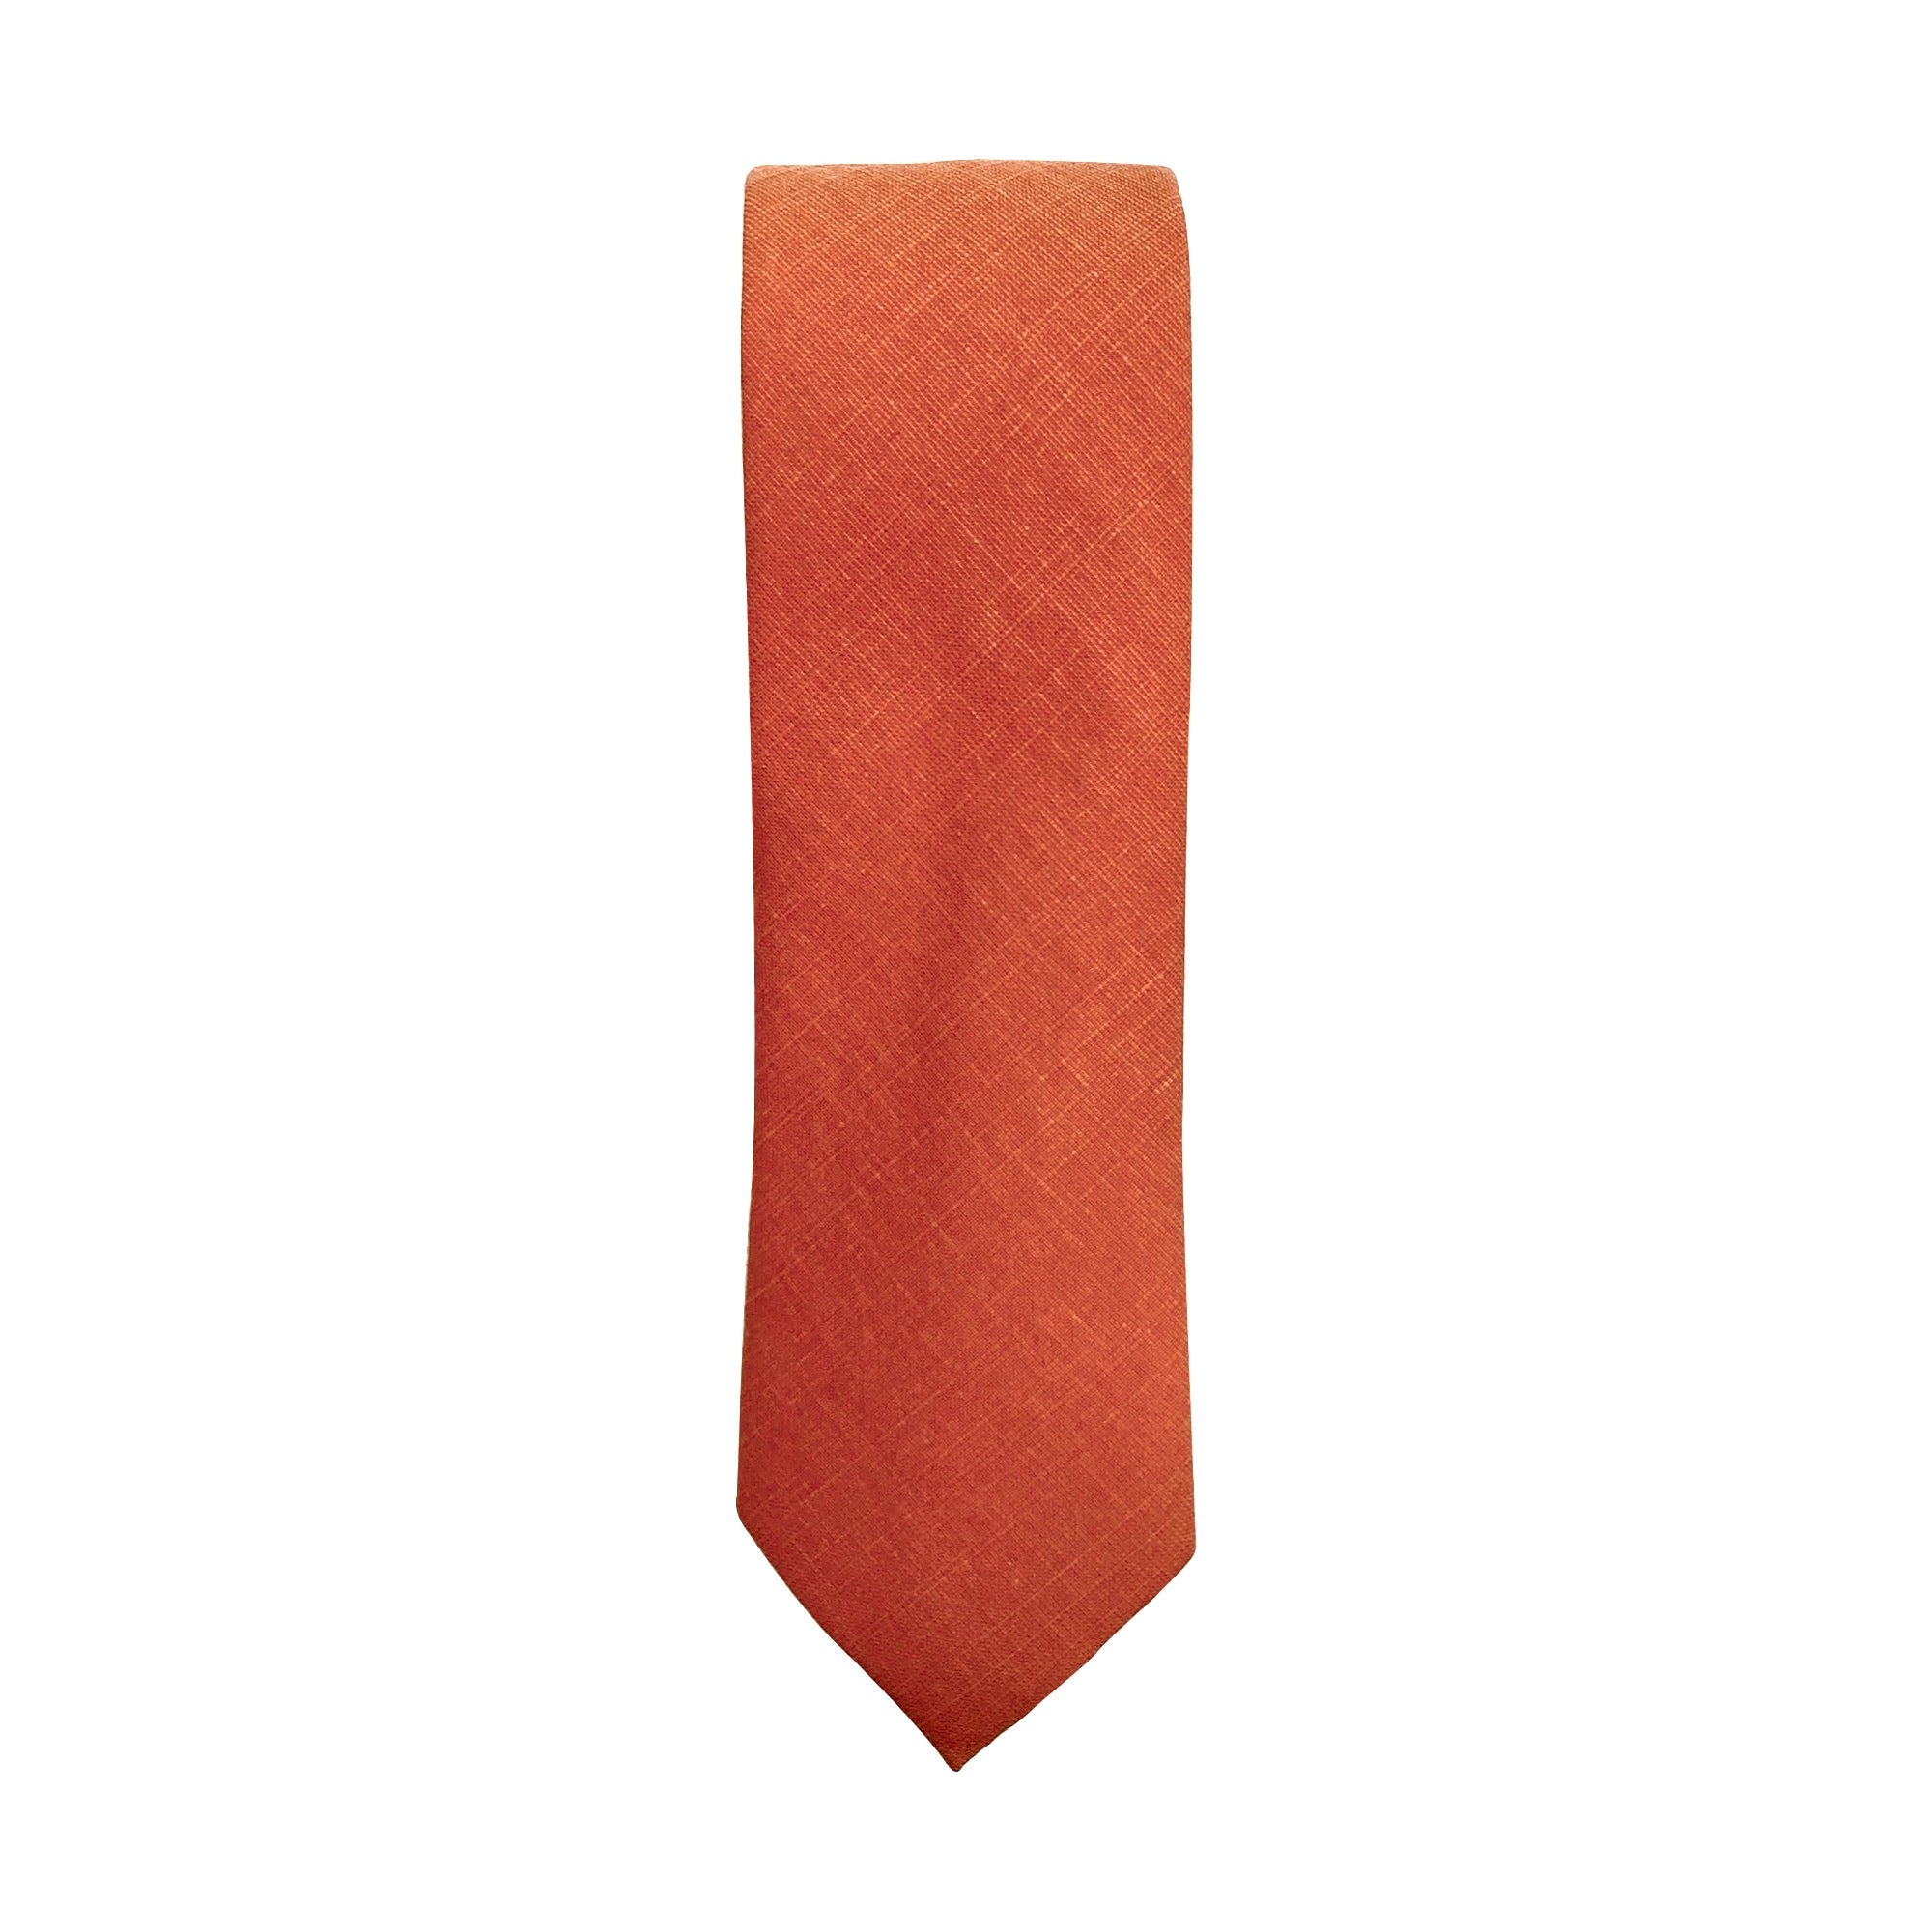 RILO - Men's Tie